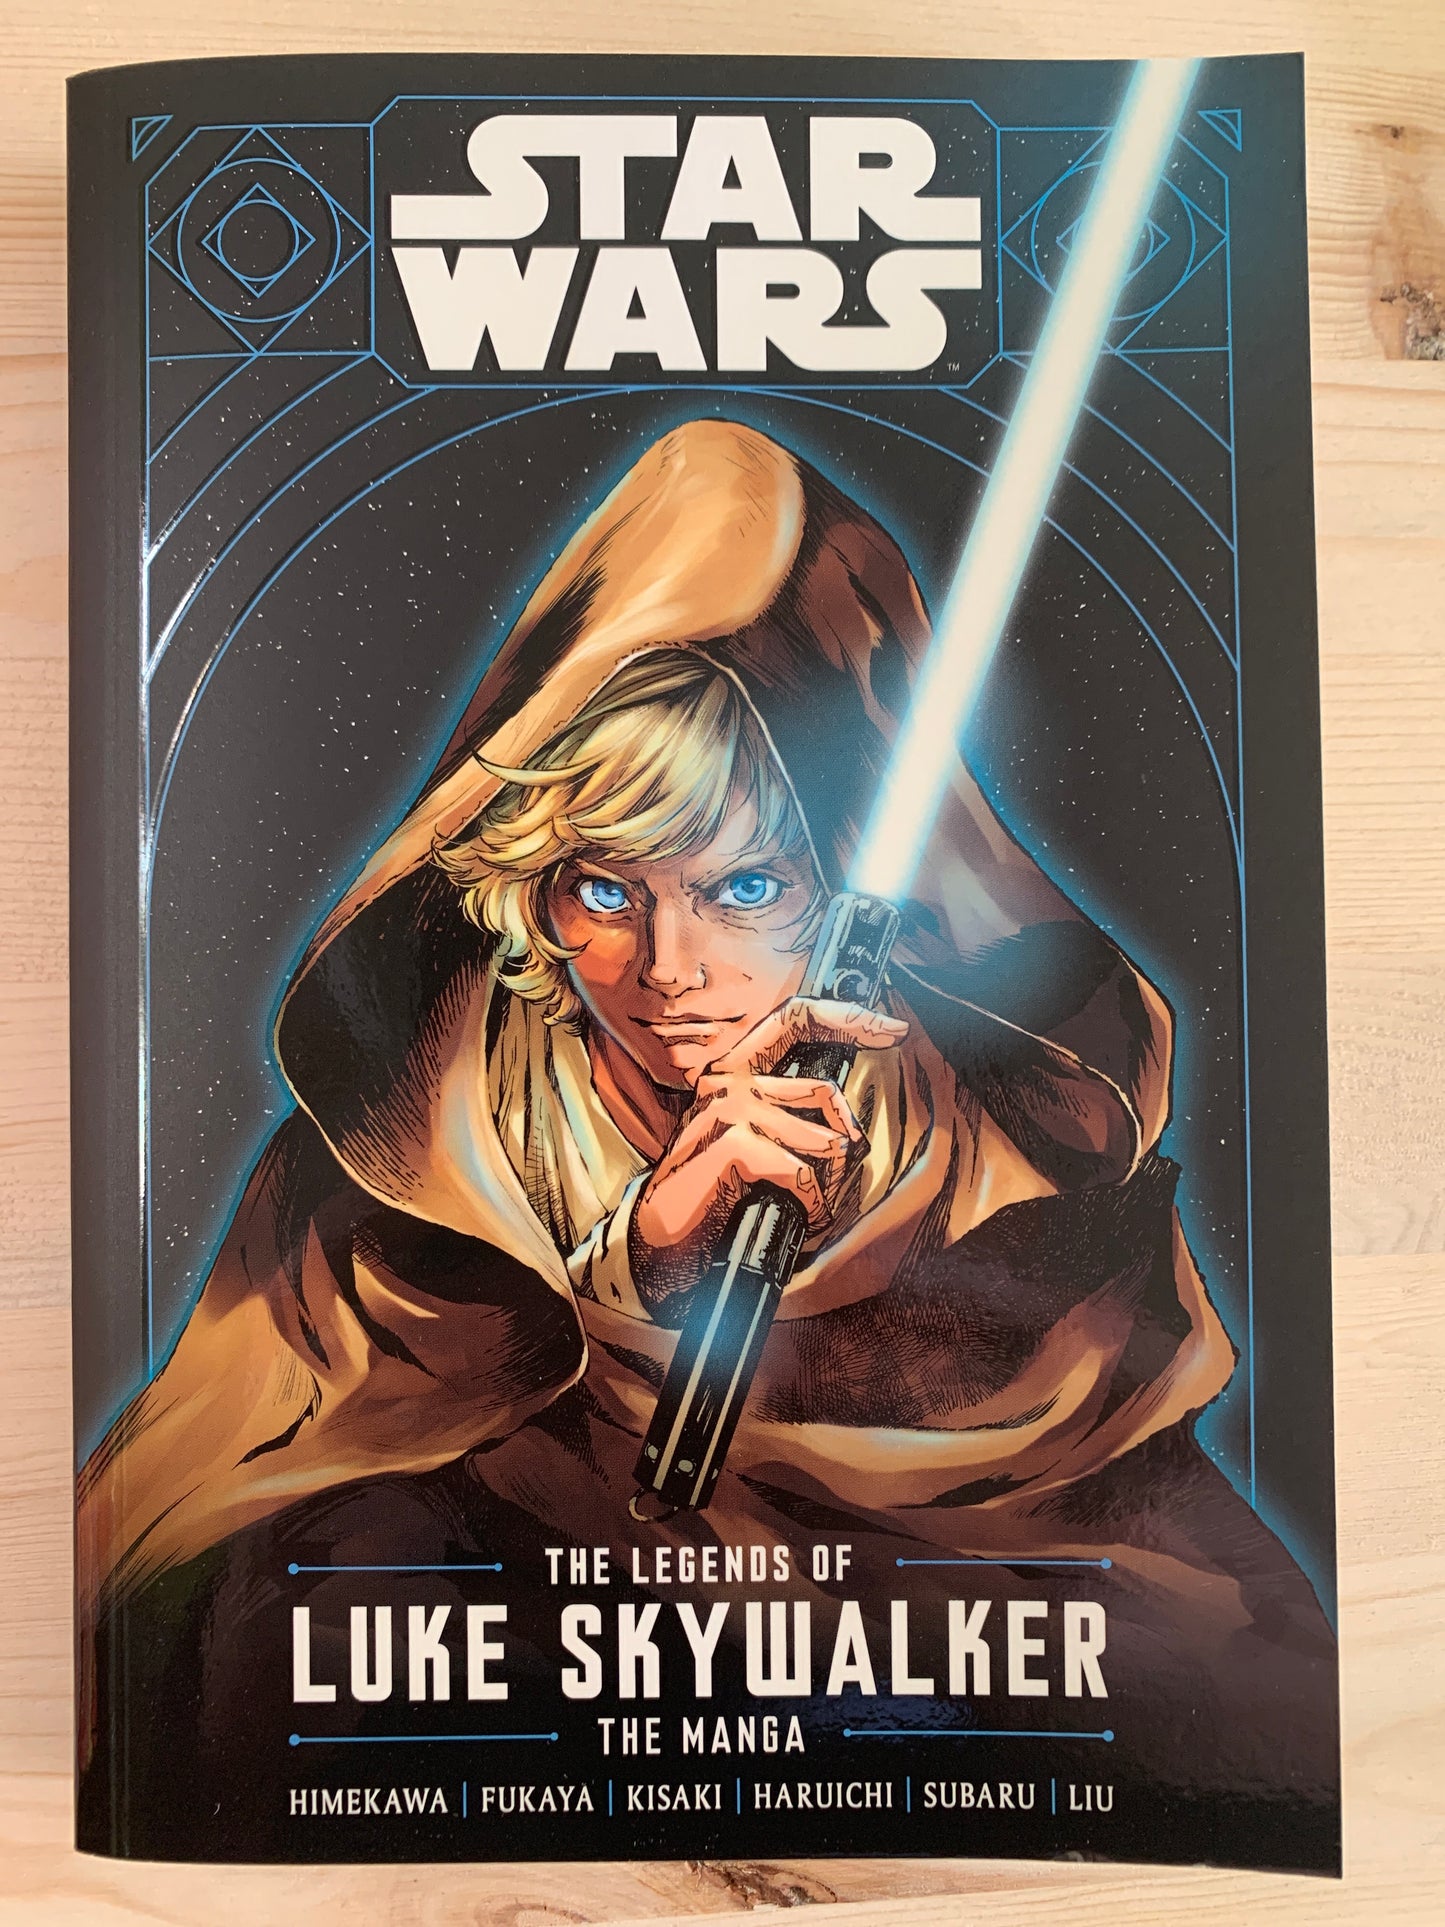 The Legends of Luke Skywalker: the Manga